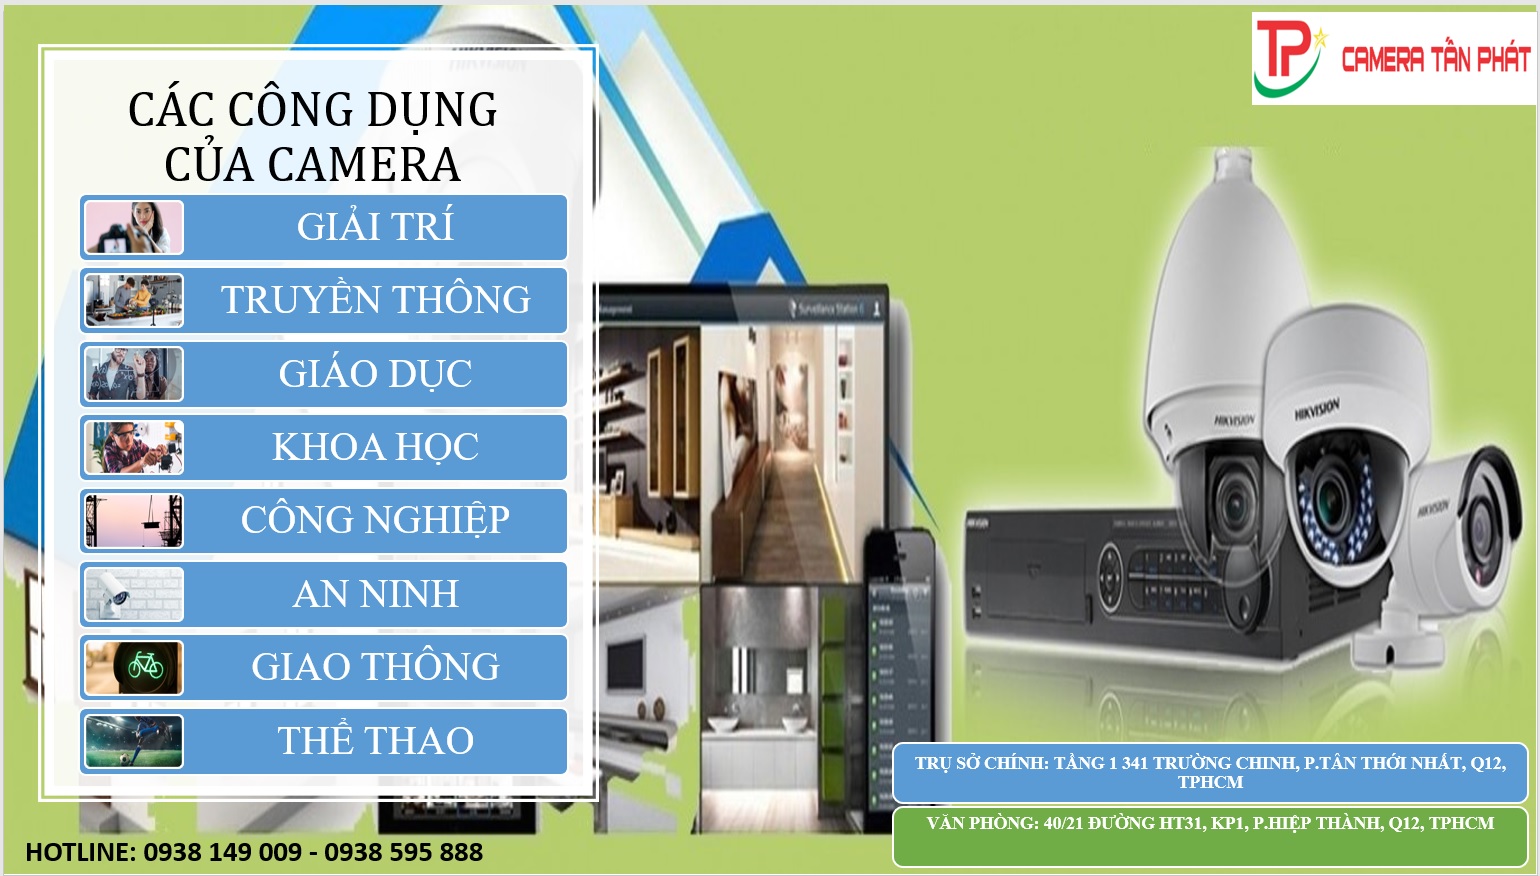 Cac Cong Dung Cua Camera